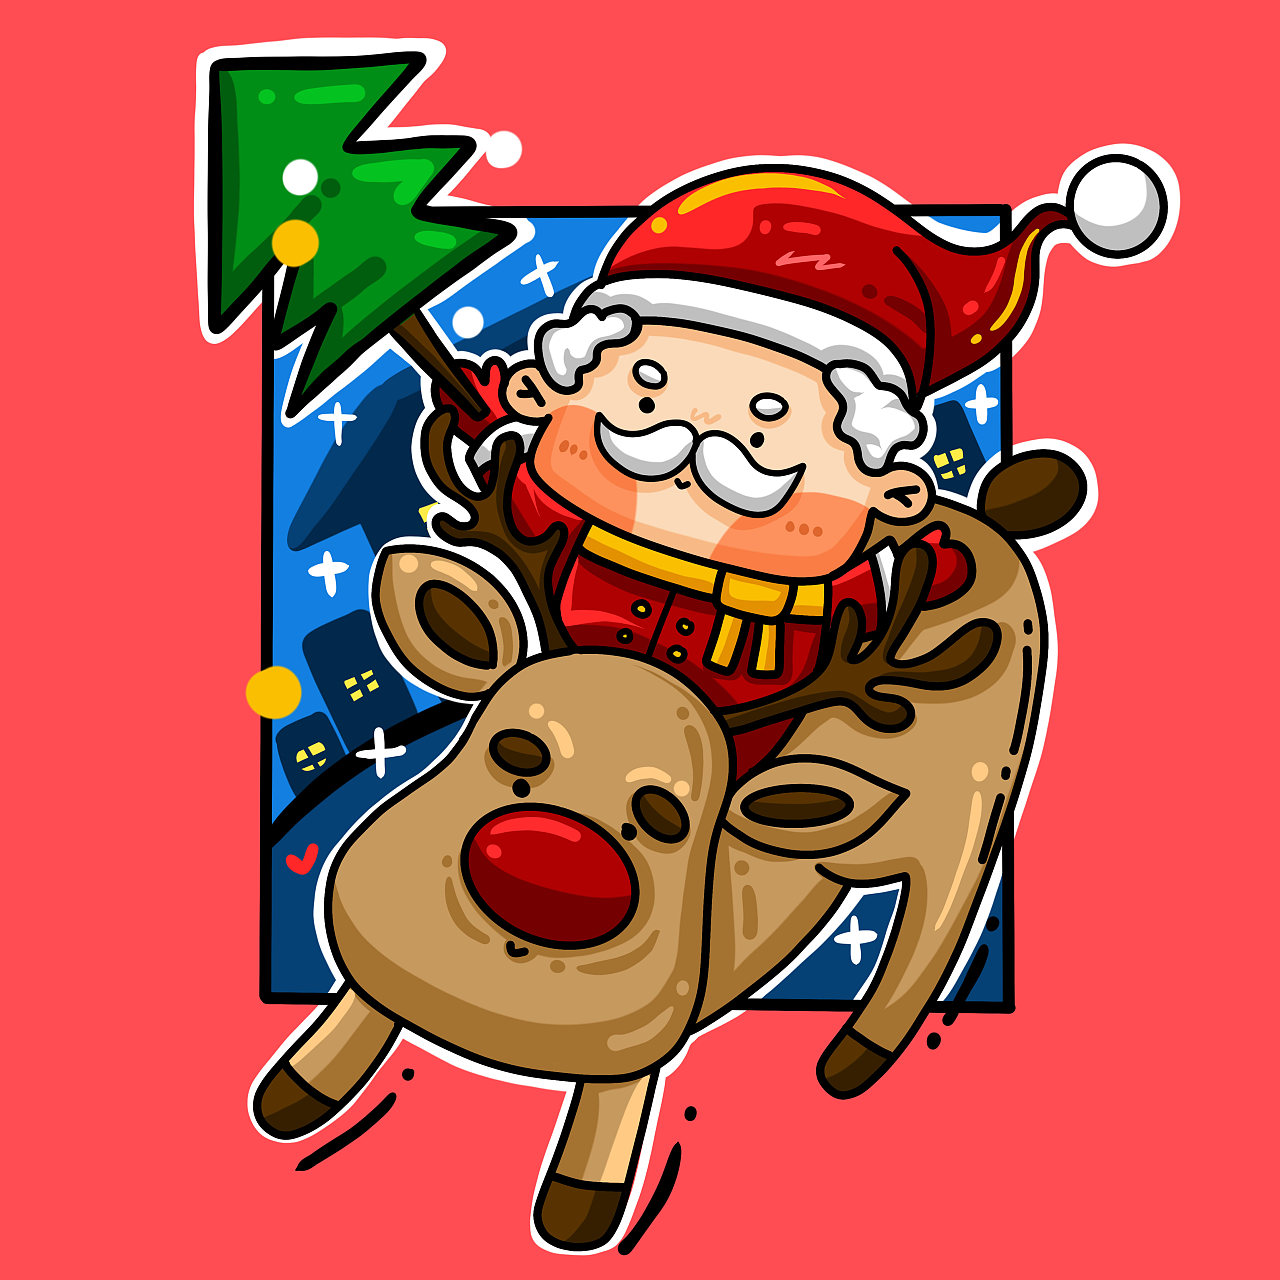 圣诞老人和鹿 库存例证. 插画 包括有 向量, 图画, 雪花, 新建, 看板卡, 毛皮, 克劳斯, 圣诞节 - 62255381